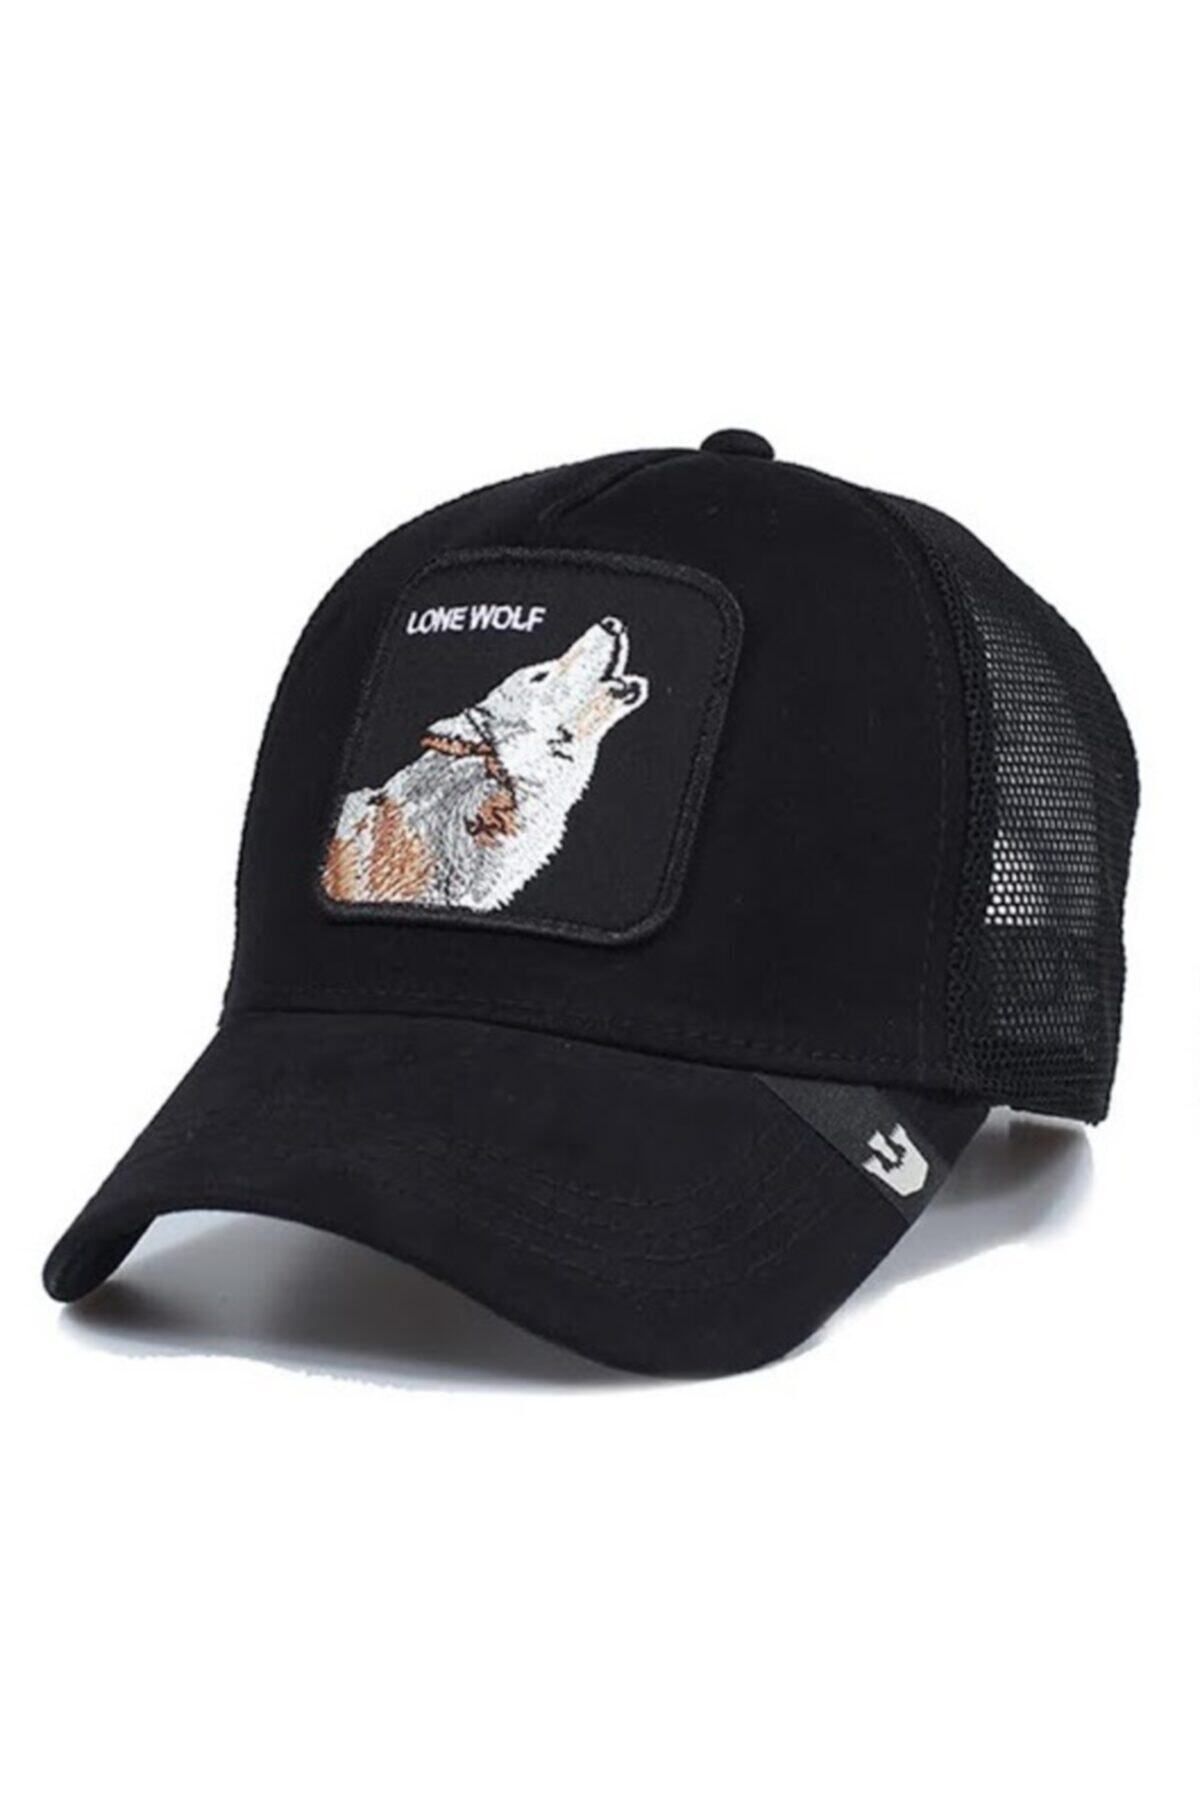 CosmoOutlet Lone Wolf Kurt Hayvan Figürlü Arkasından Ayarlanabilir Fileli Unisex Siyah Şapka